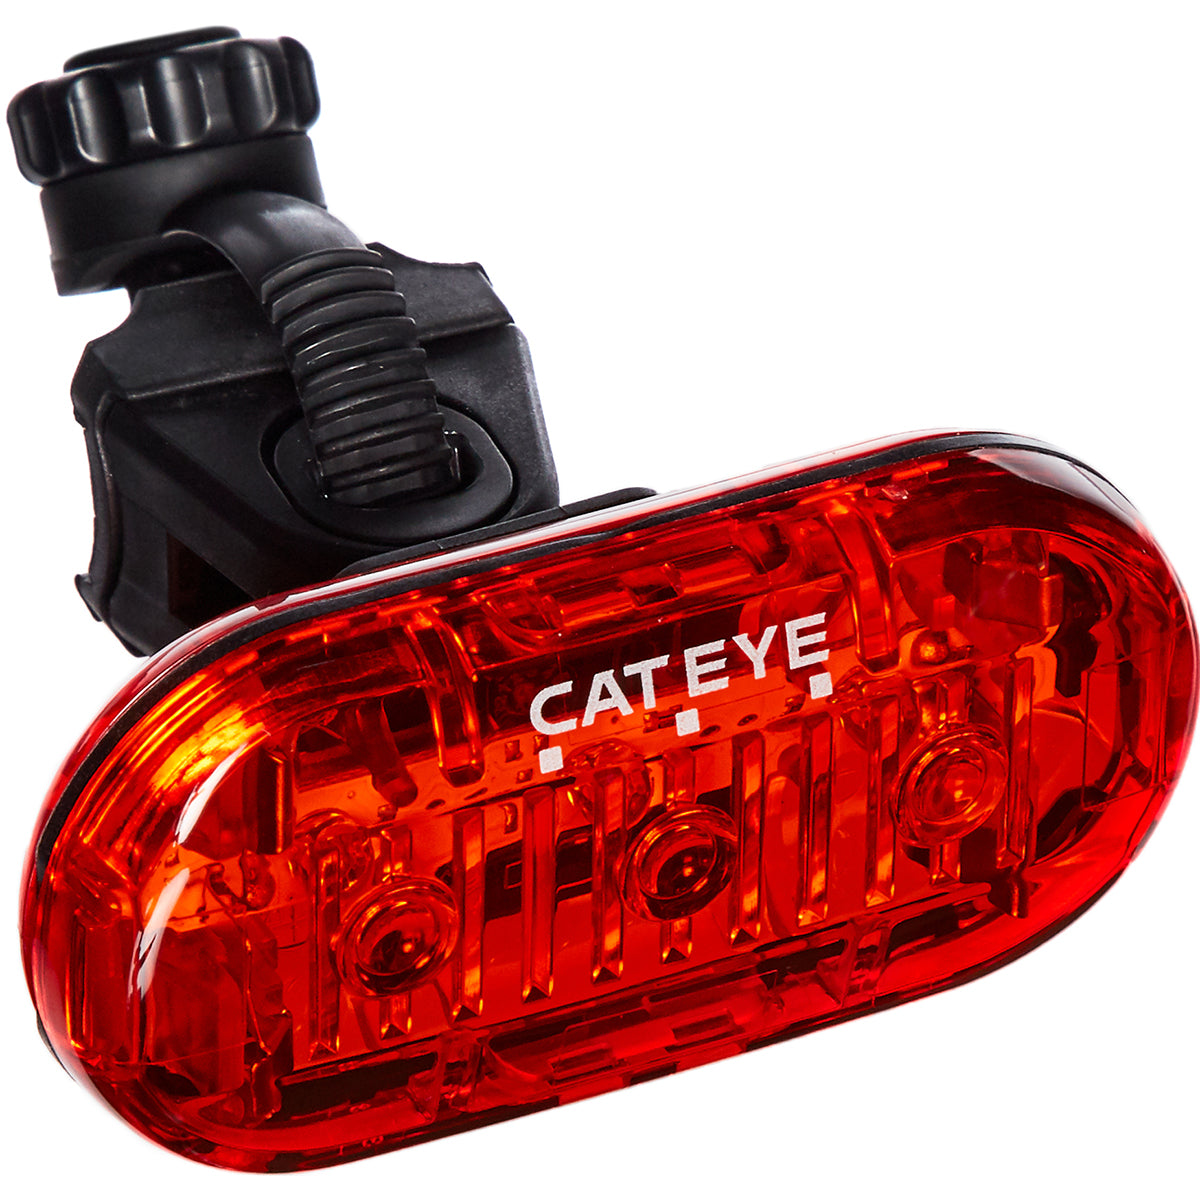 CatEye Omni 3 Cycling Rear Safety Light - TL-LD135-R CatEye